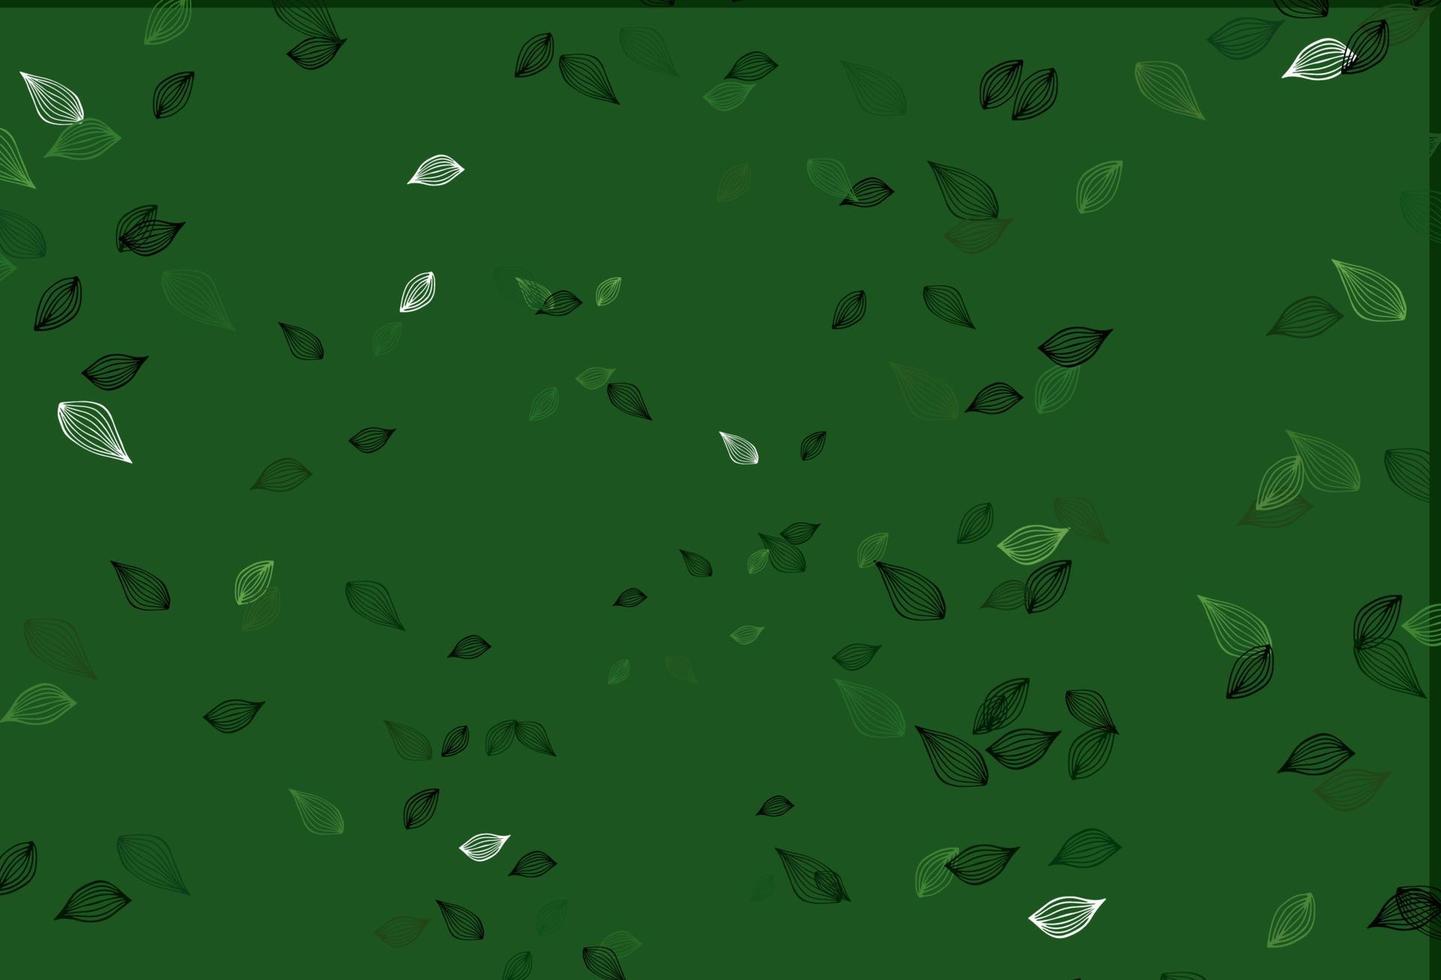 copertina di schizzo vettoriale verde chiaro.